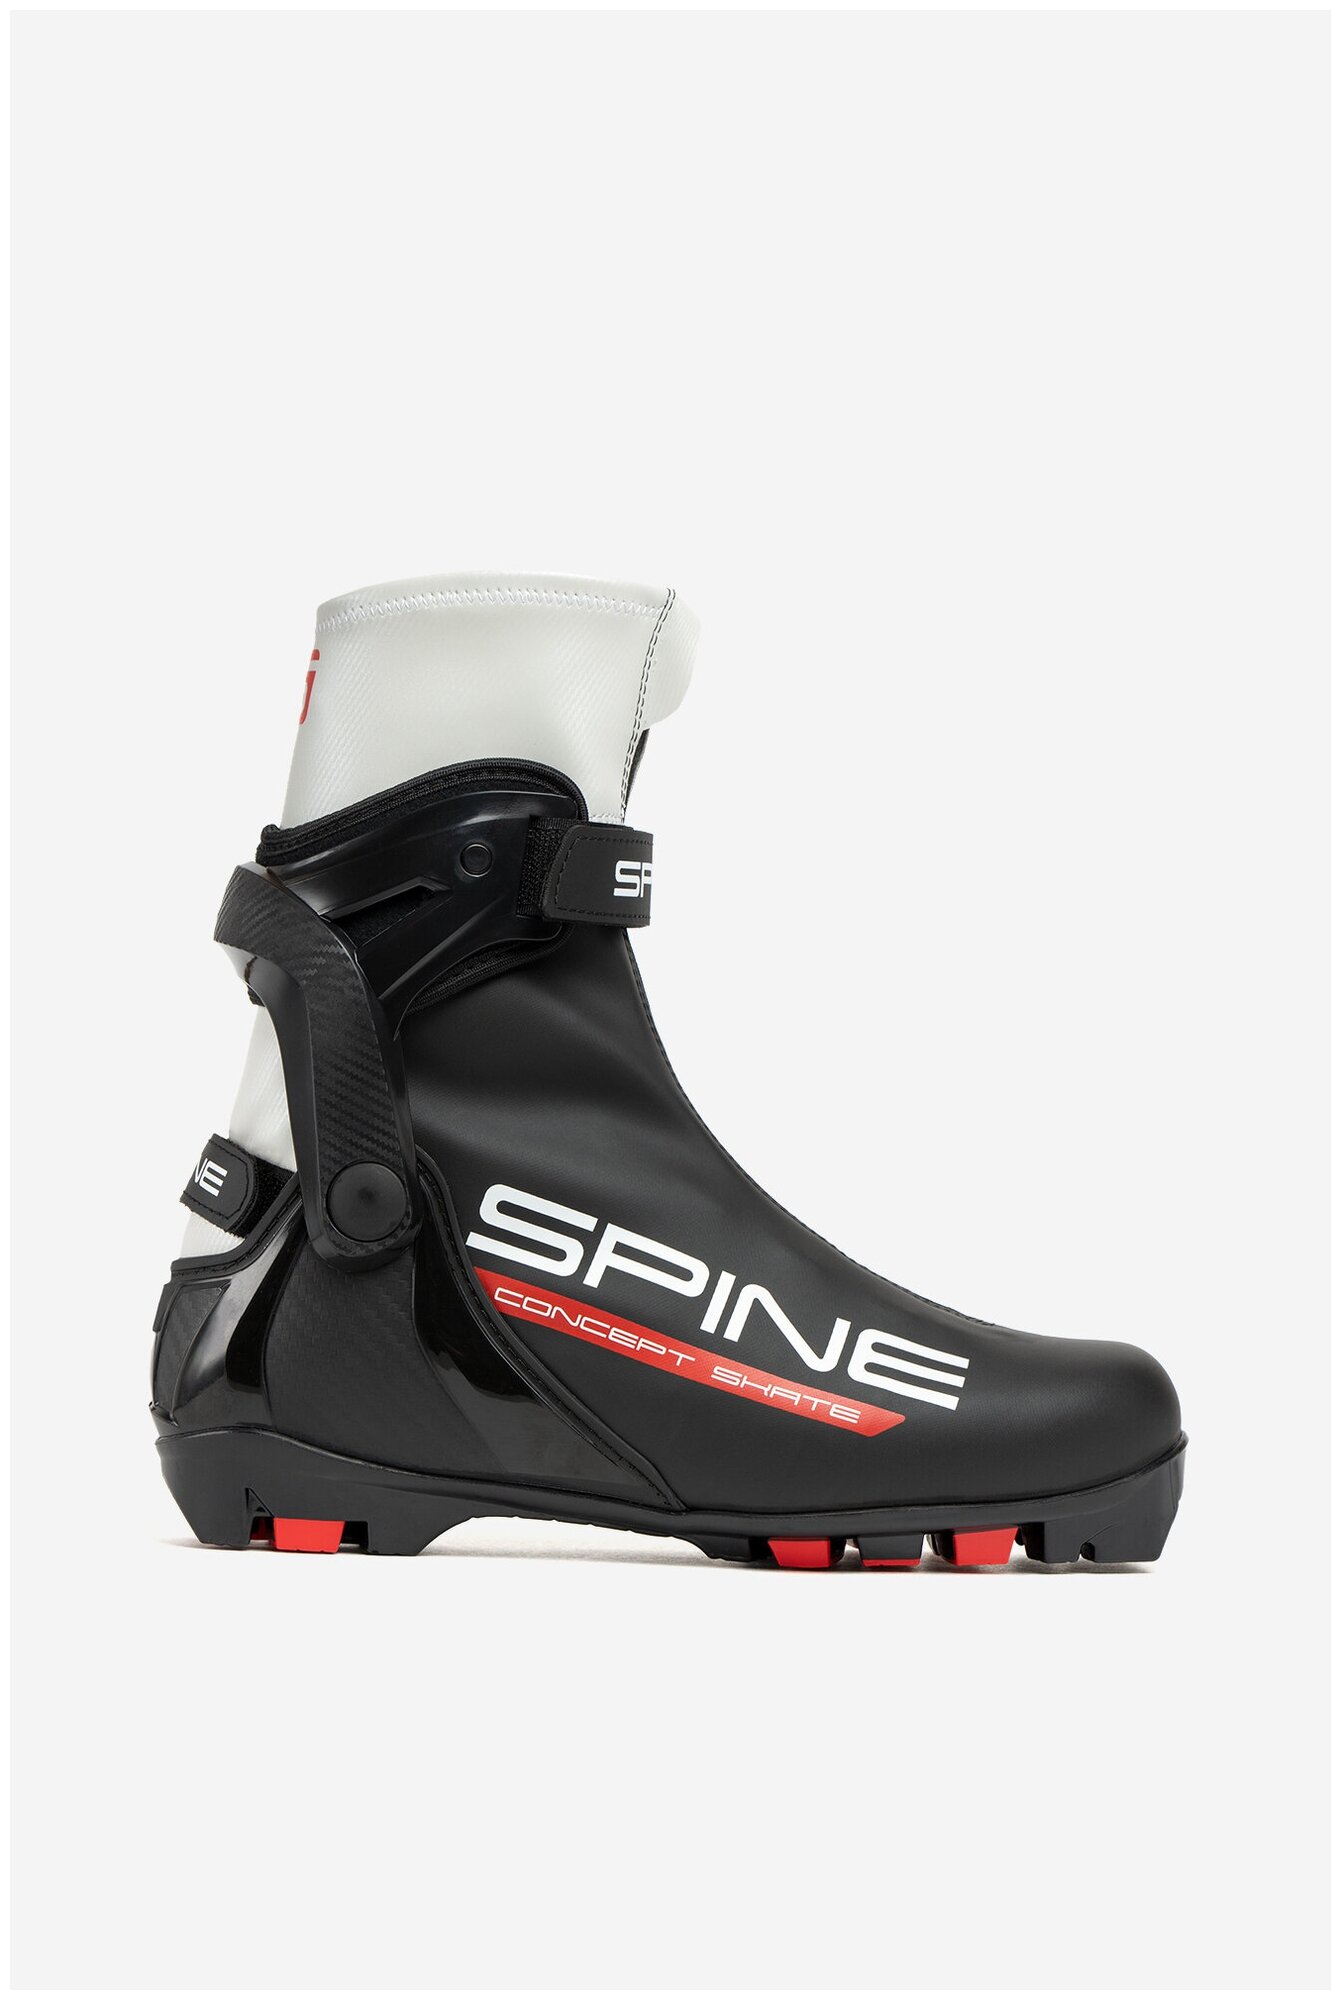 SPINE   NNN SPINE Concept Skate 296-22 ( 47)